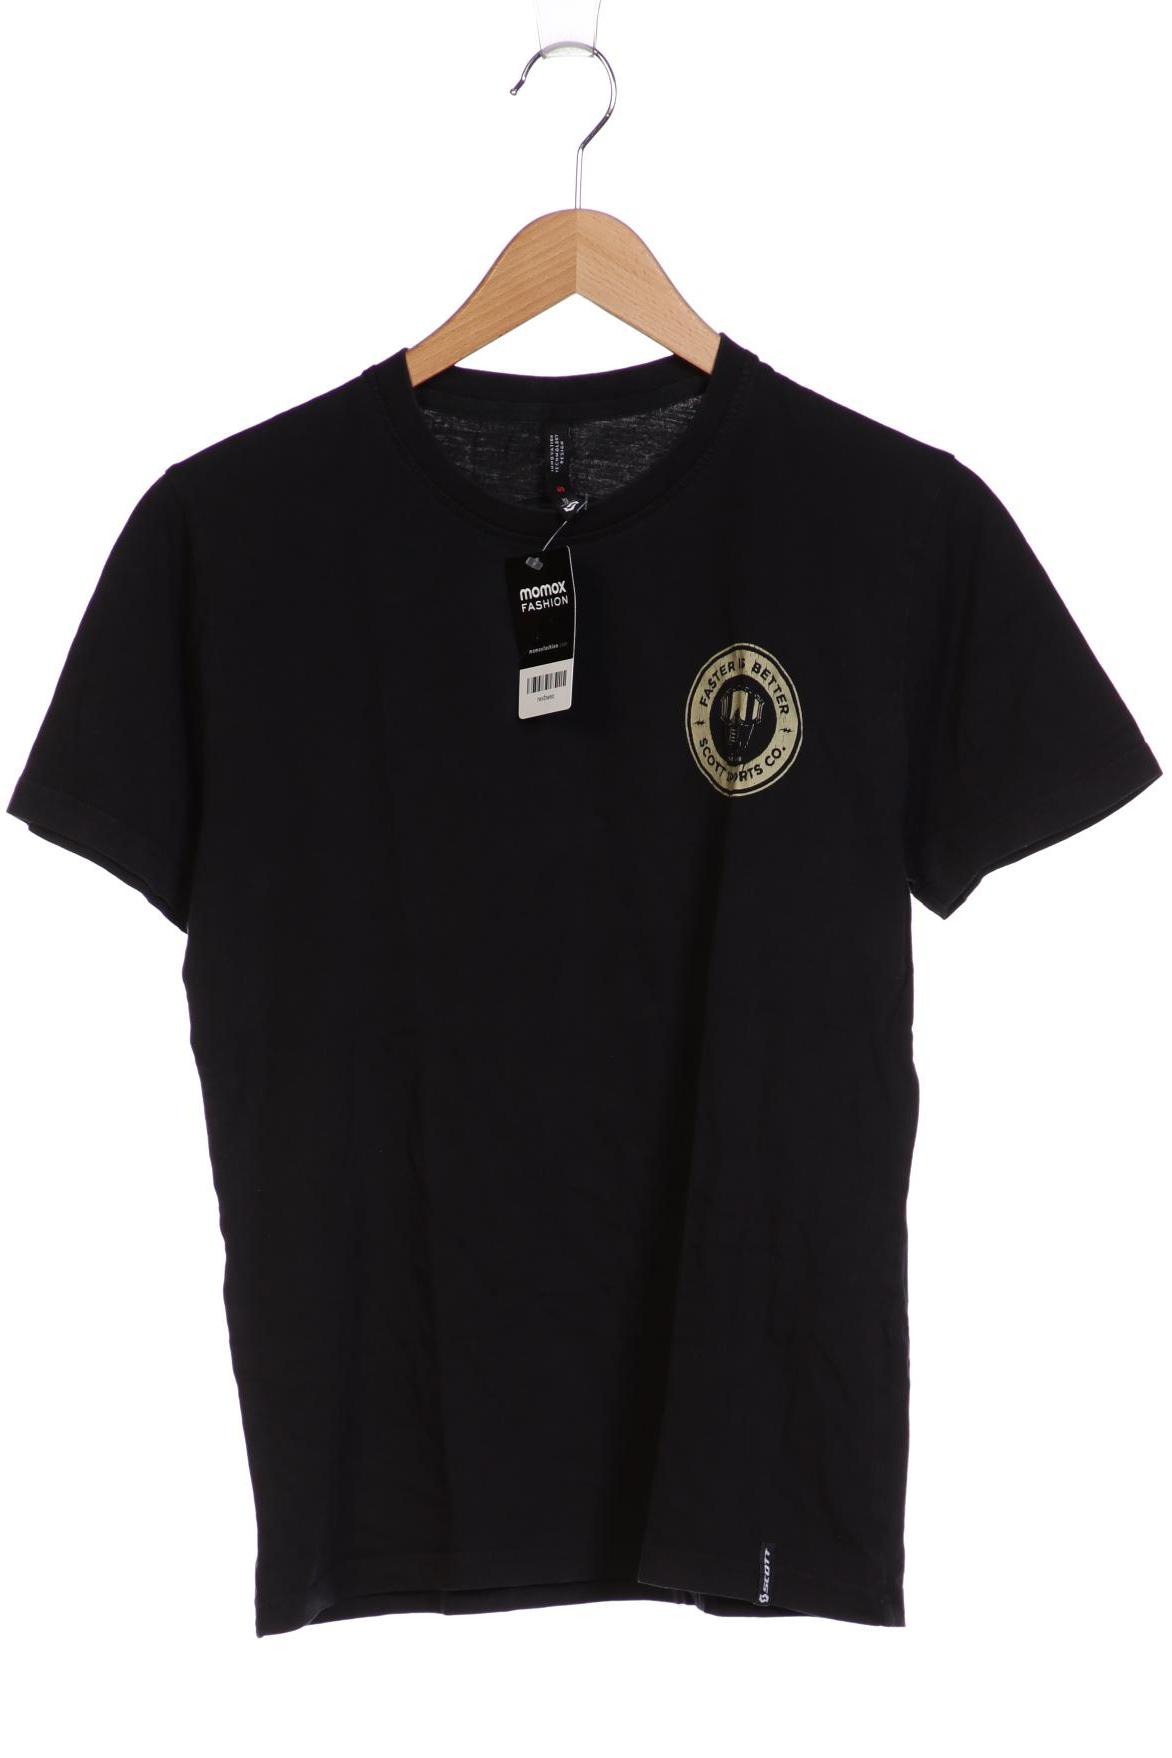 Scott Herren T-Shirt, schwarz, Gr. 46 von Scott